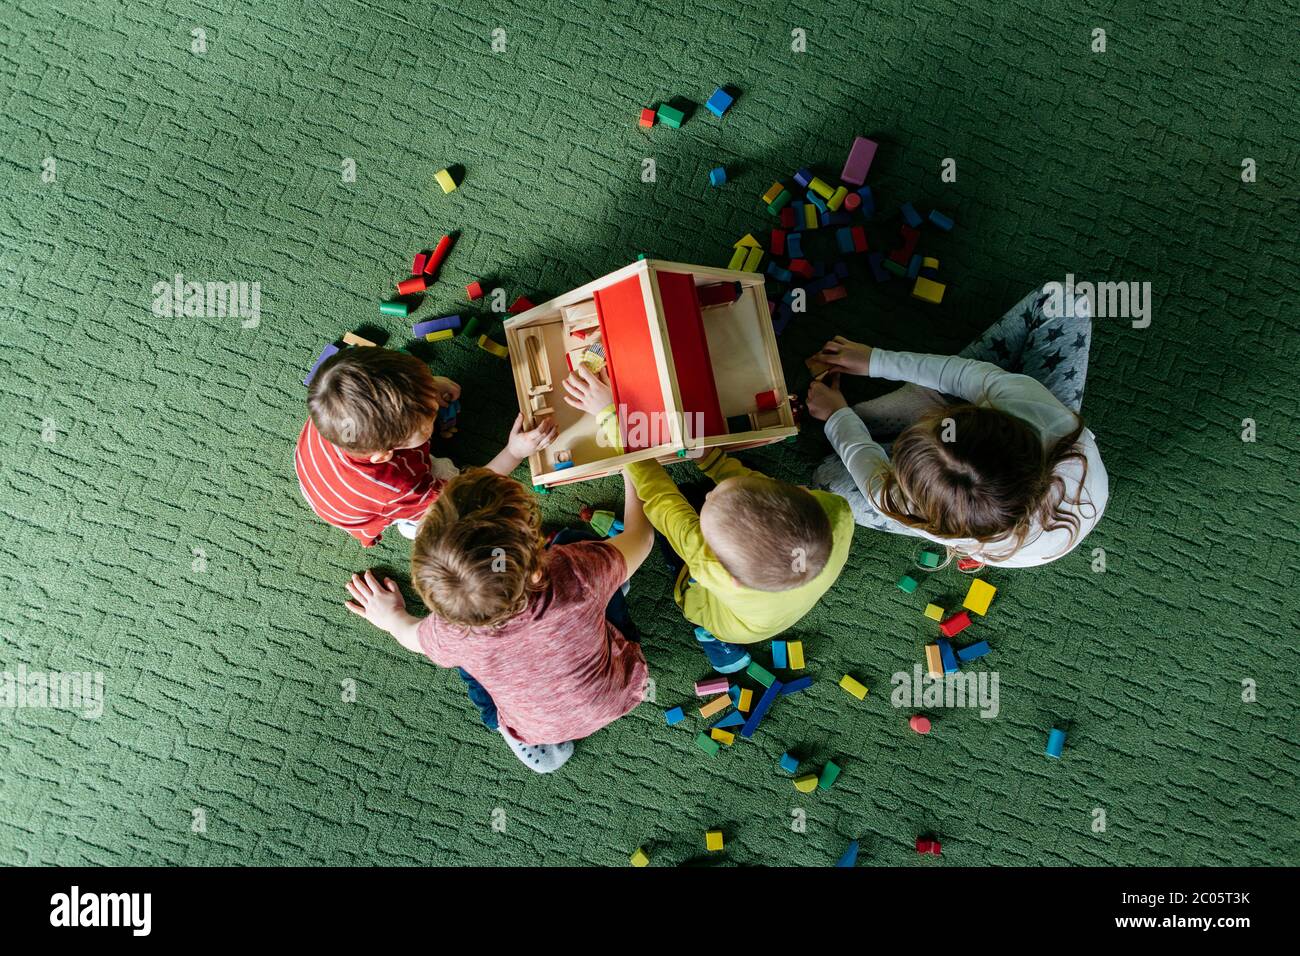 Vue de dessus des enfants jouant avec une maison de poupée en bois Banque D'Images